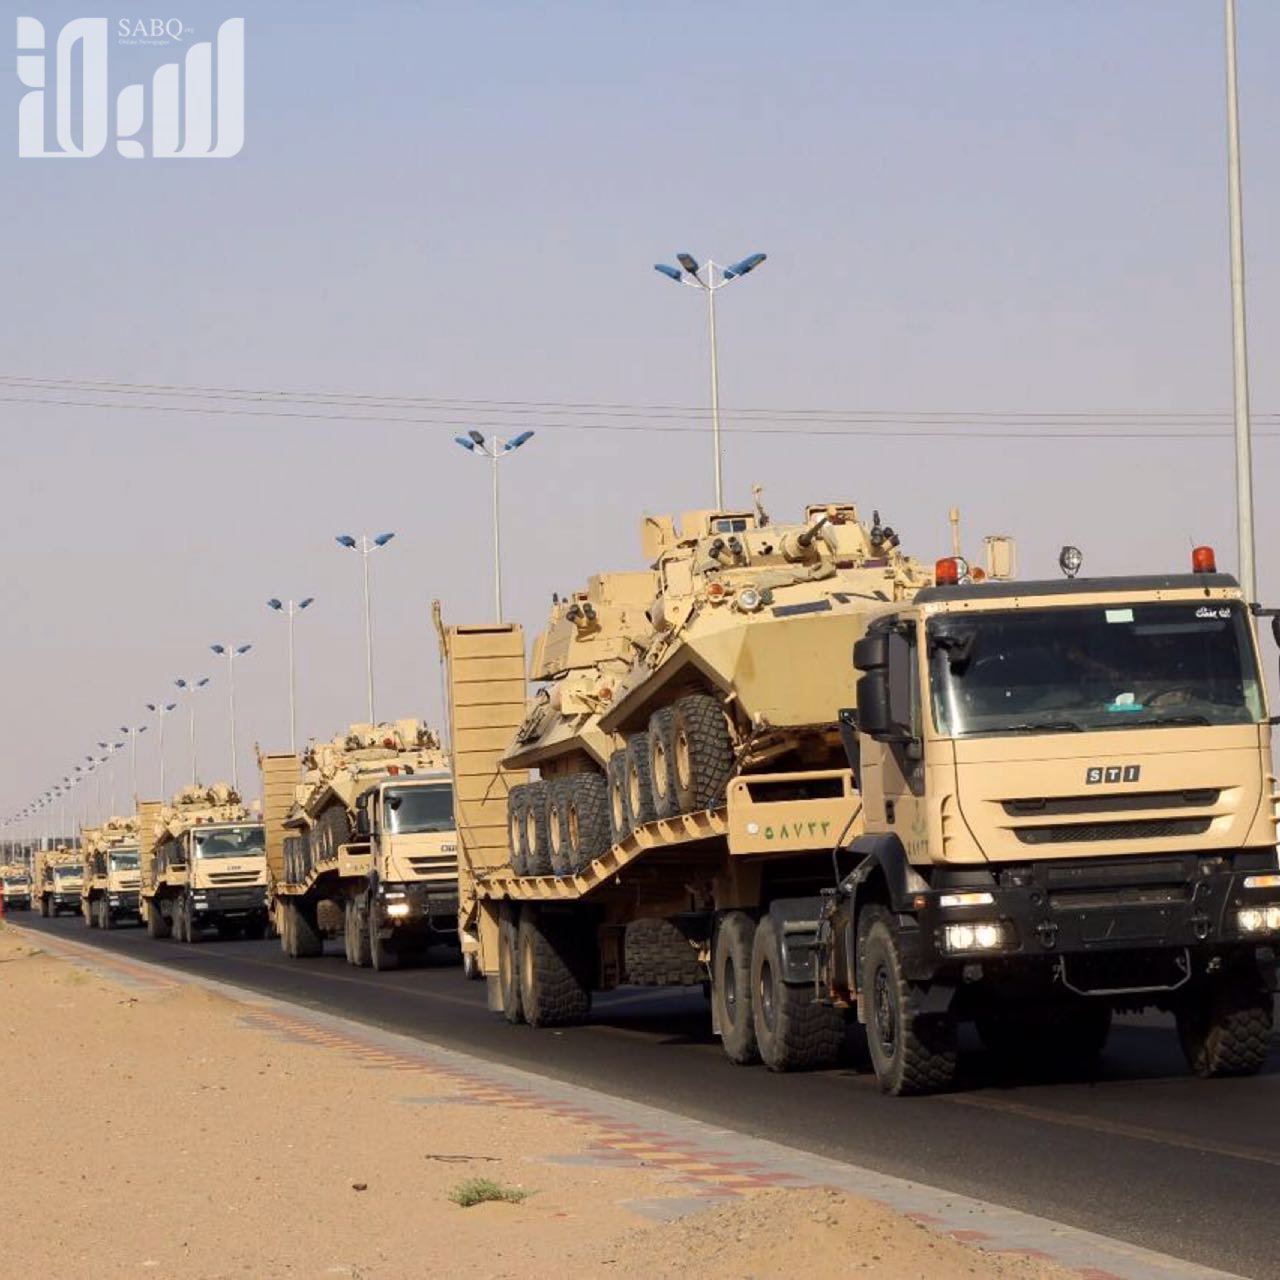 وصول قوات عسكرية ضاربة مجهزة بأحدث الأسلحة النوعية إلى الحدود بين اليمن والسعودية (صور)